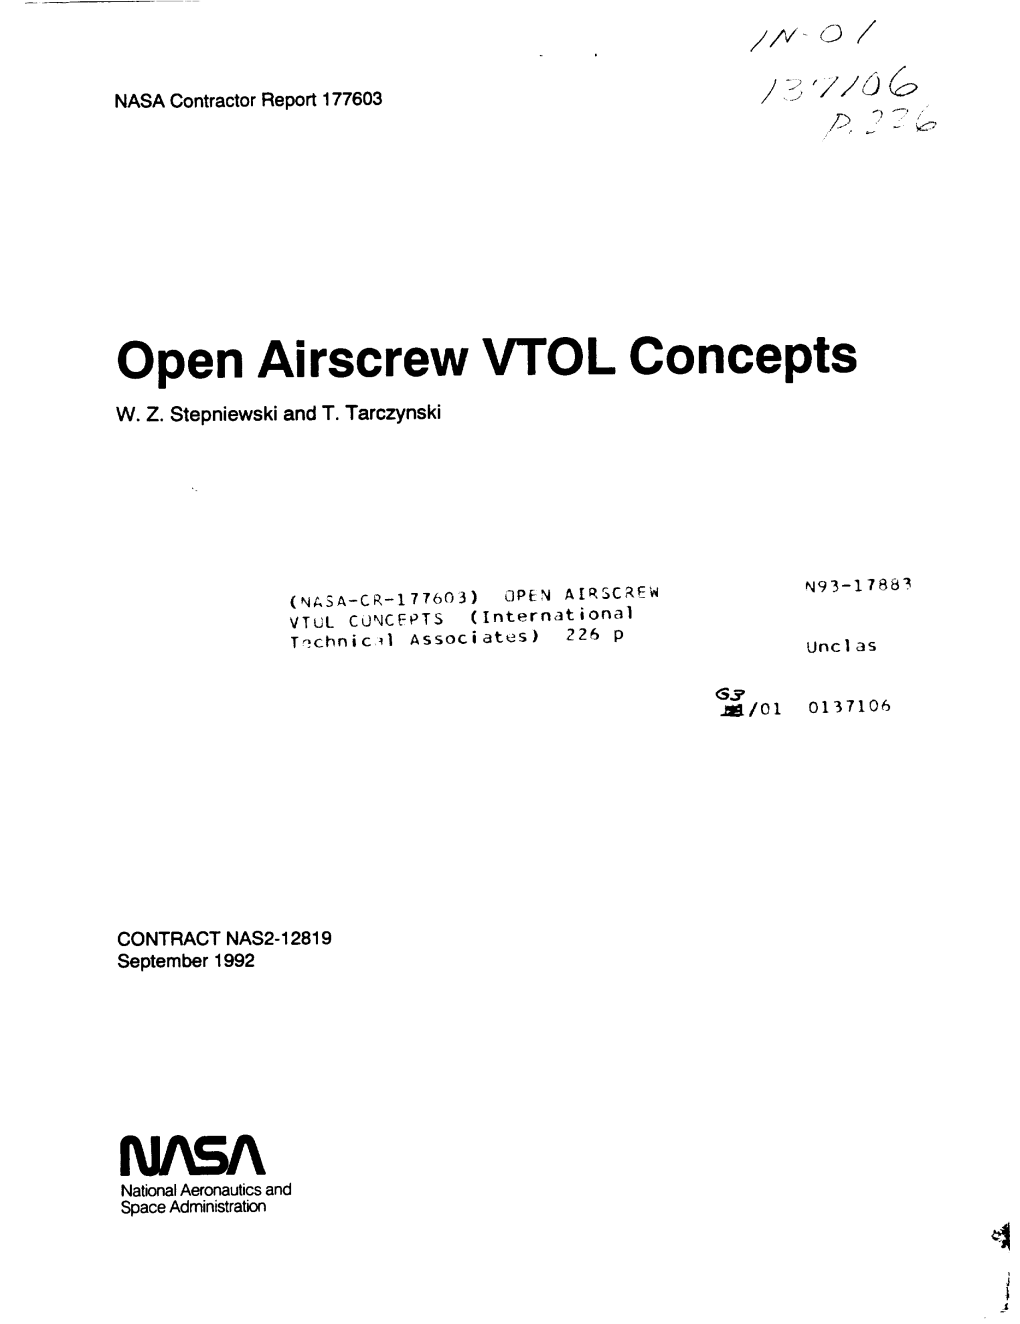 Open Airscrew VTOL Concepts